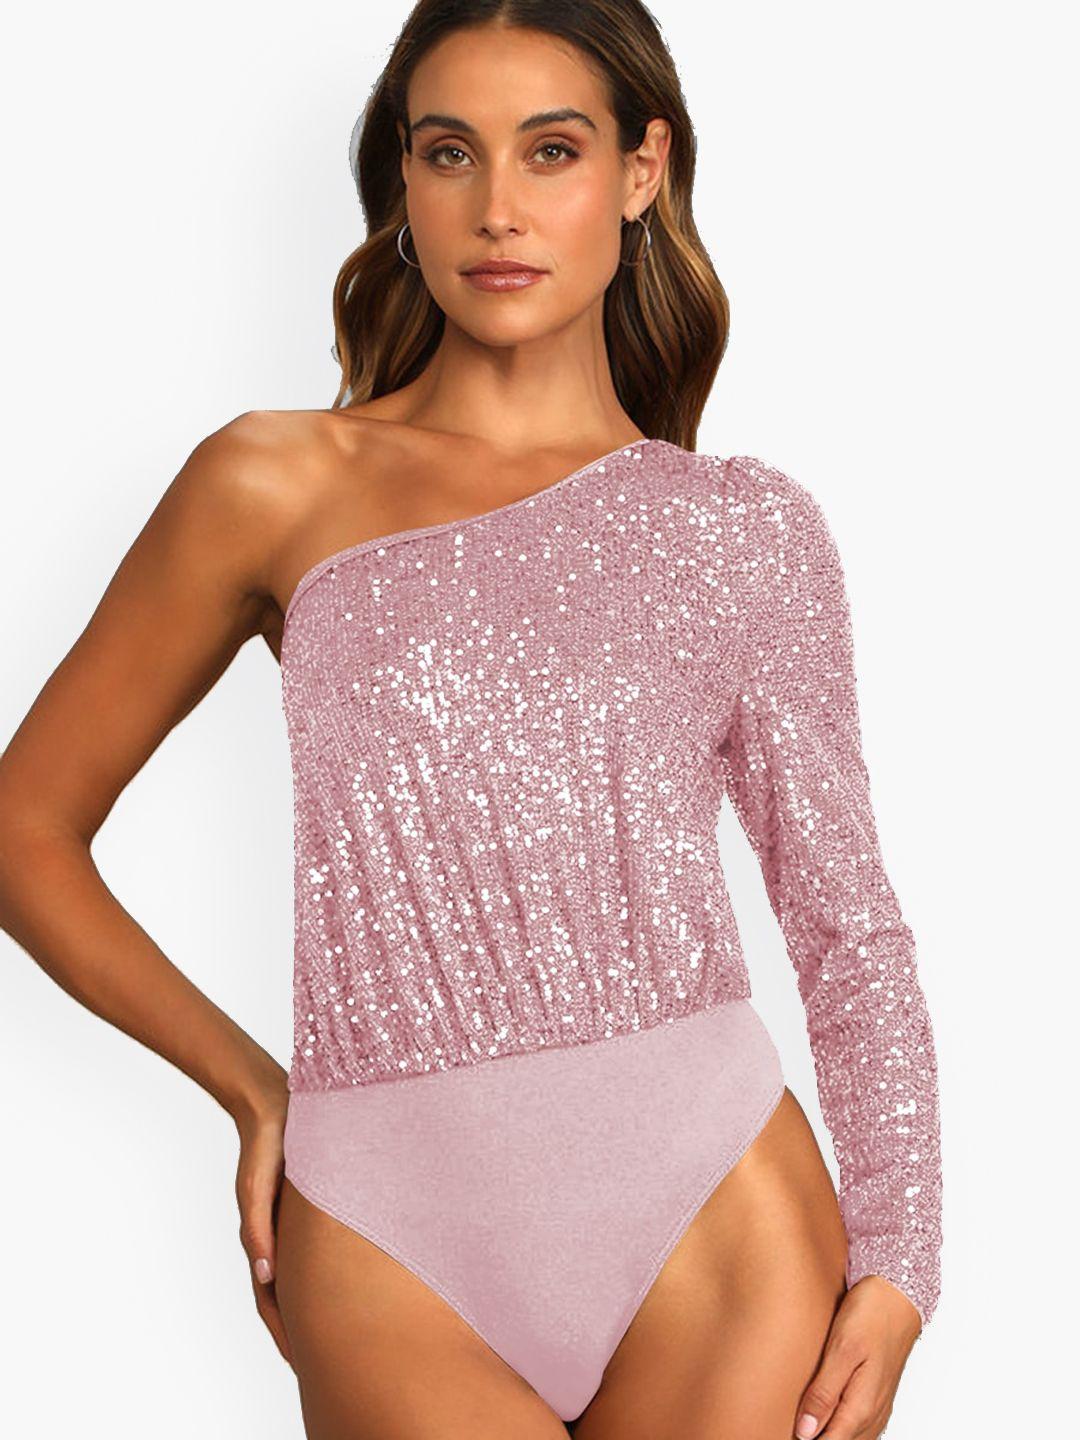 stylecast pink one shoulder embellished bodysuit